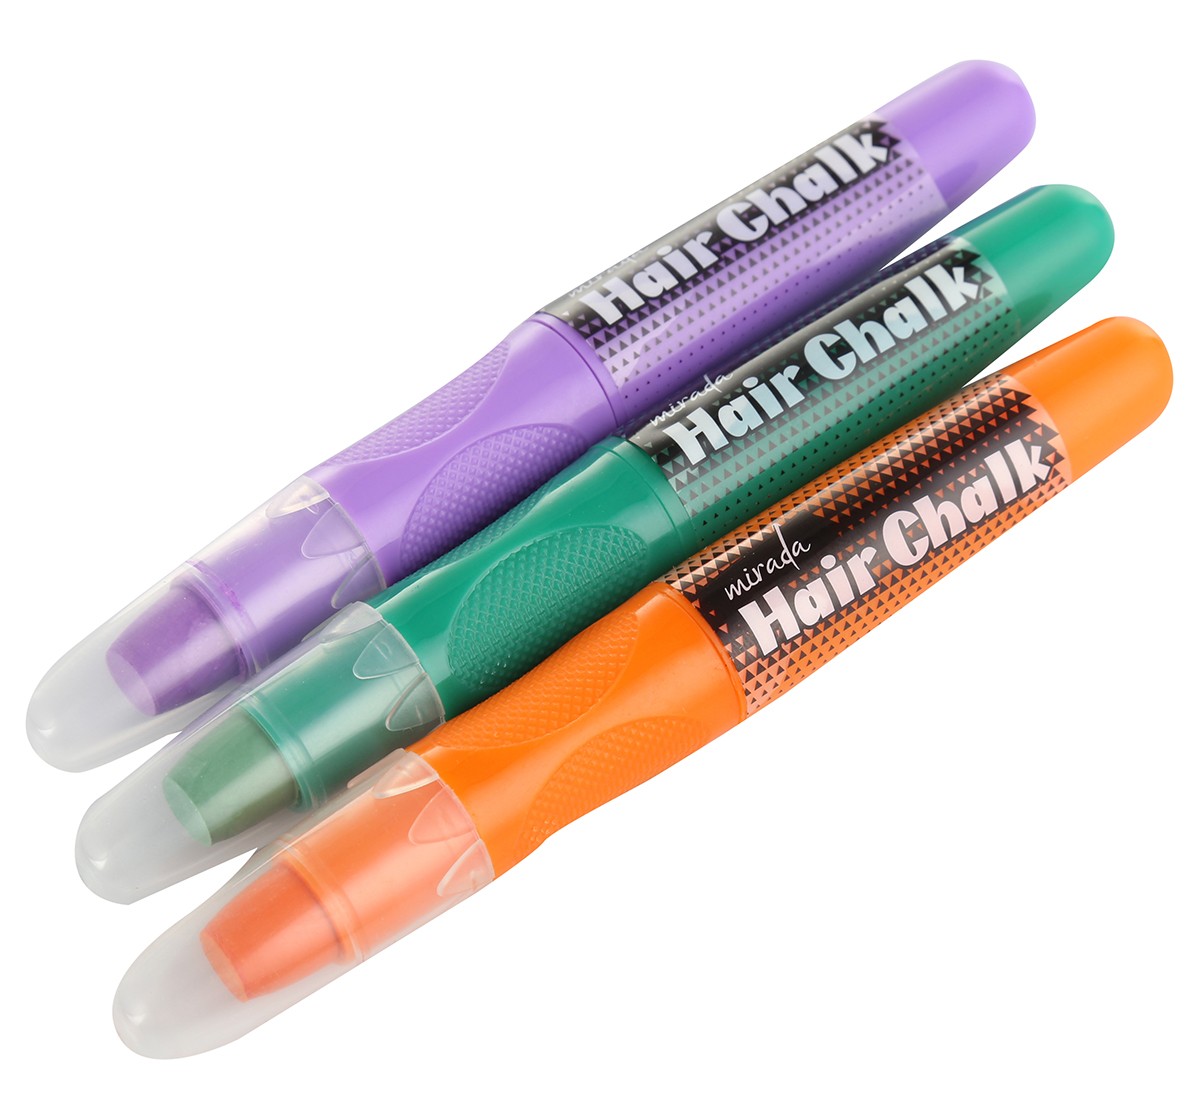 Mirada Hair chalk pen sparkle Multicolor 6Y+